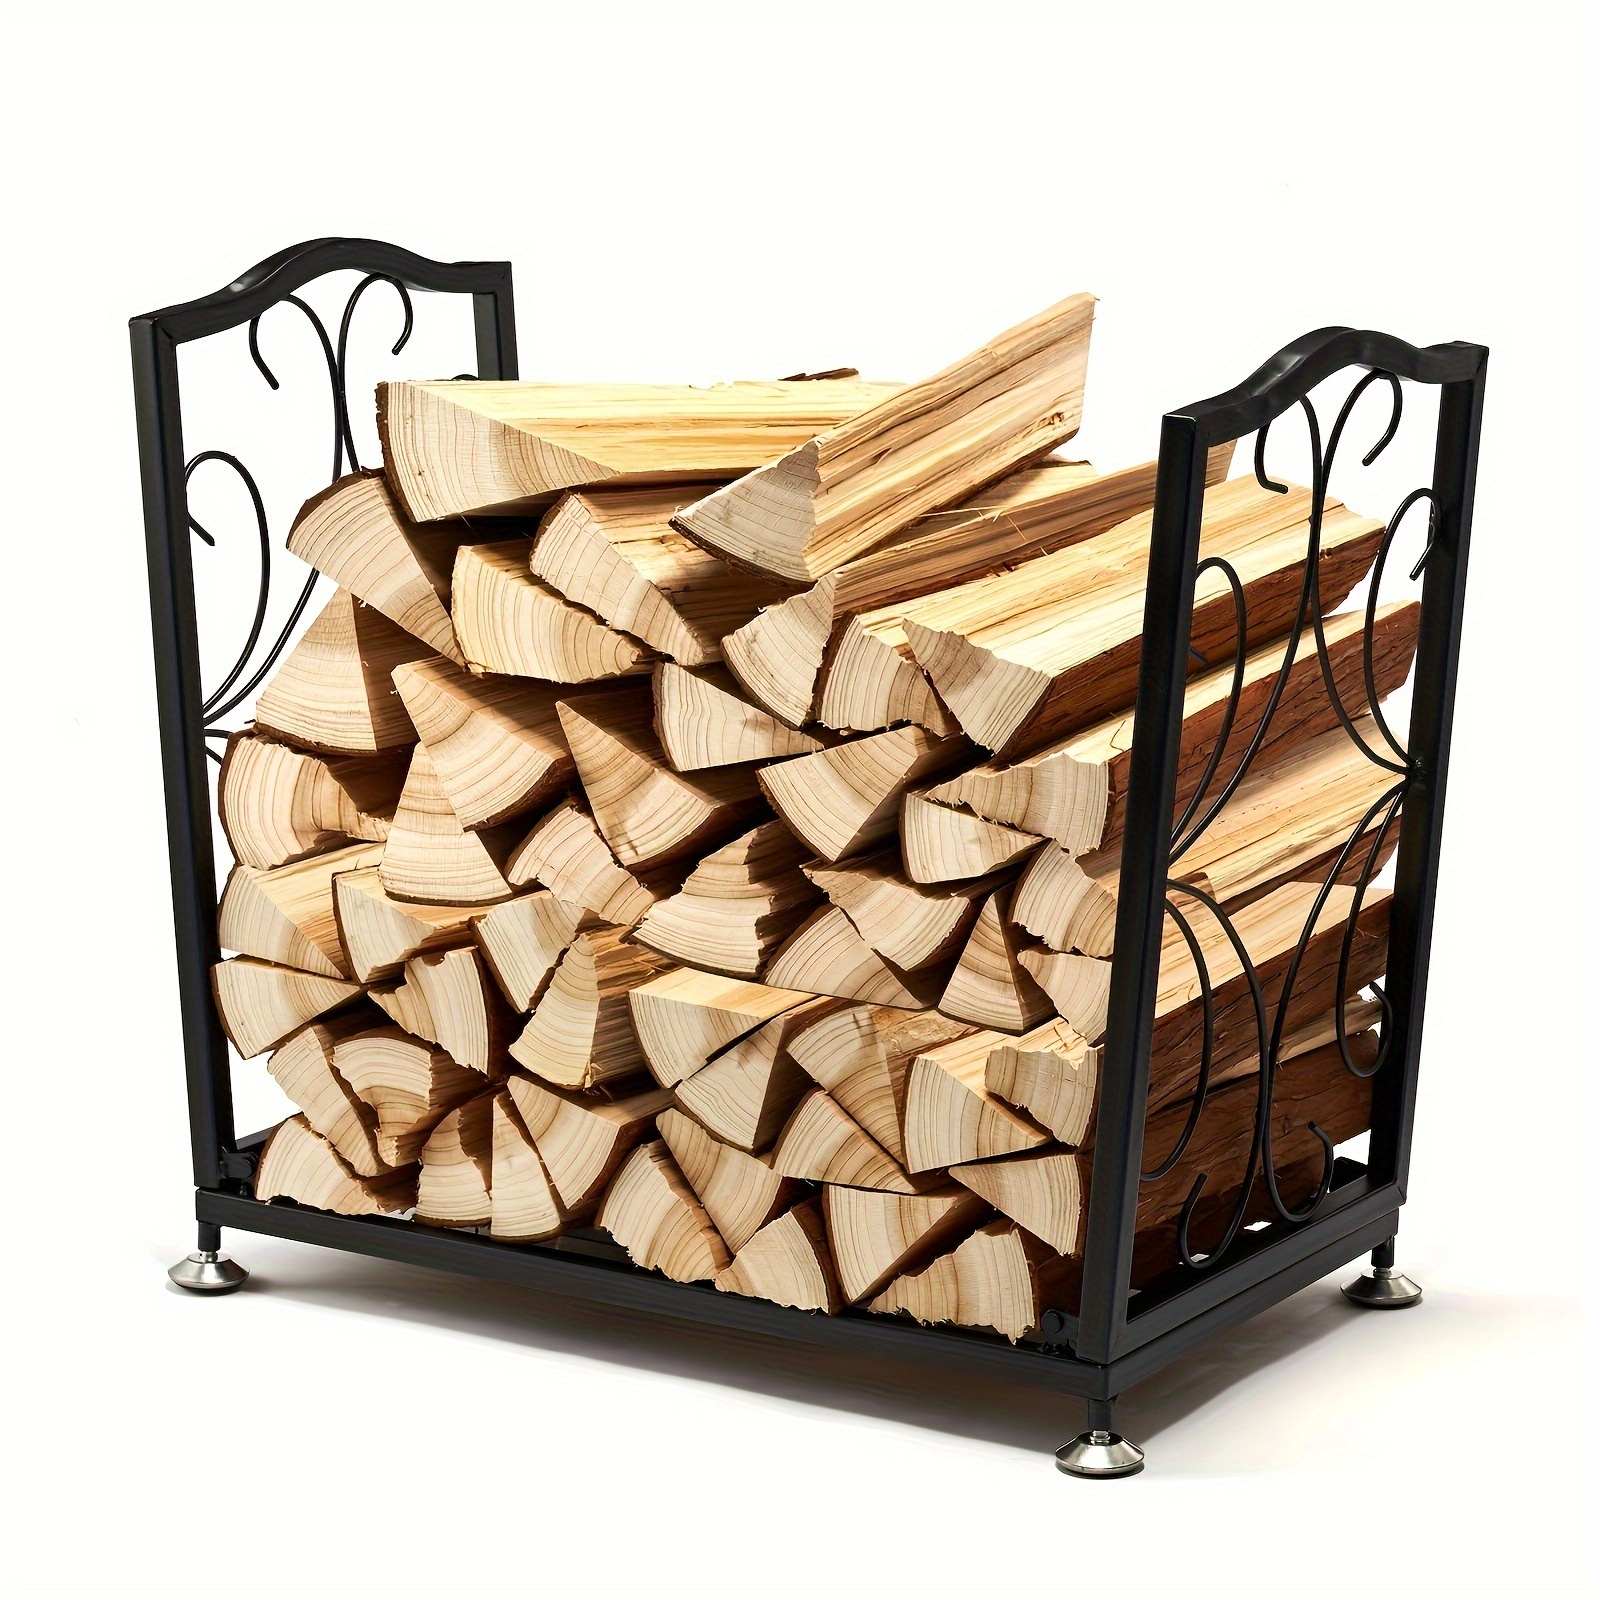 Support de bois de chauffage intérieur réglable / Support de bois